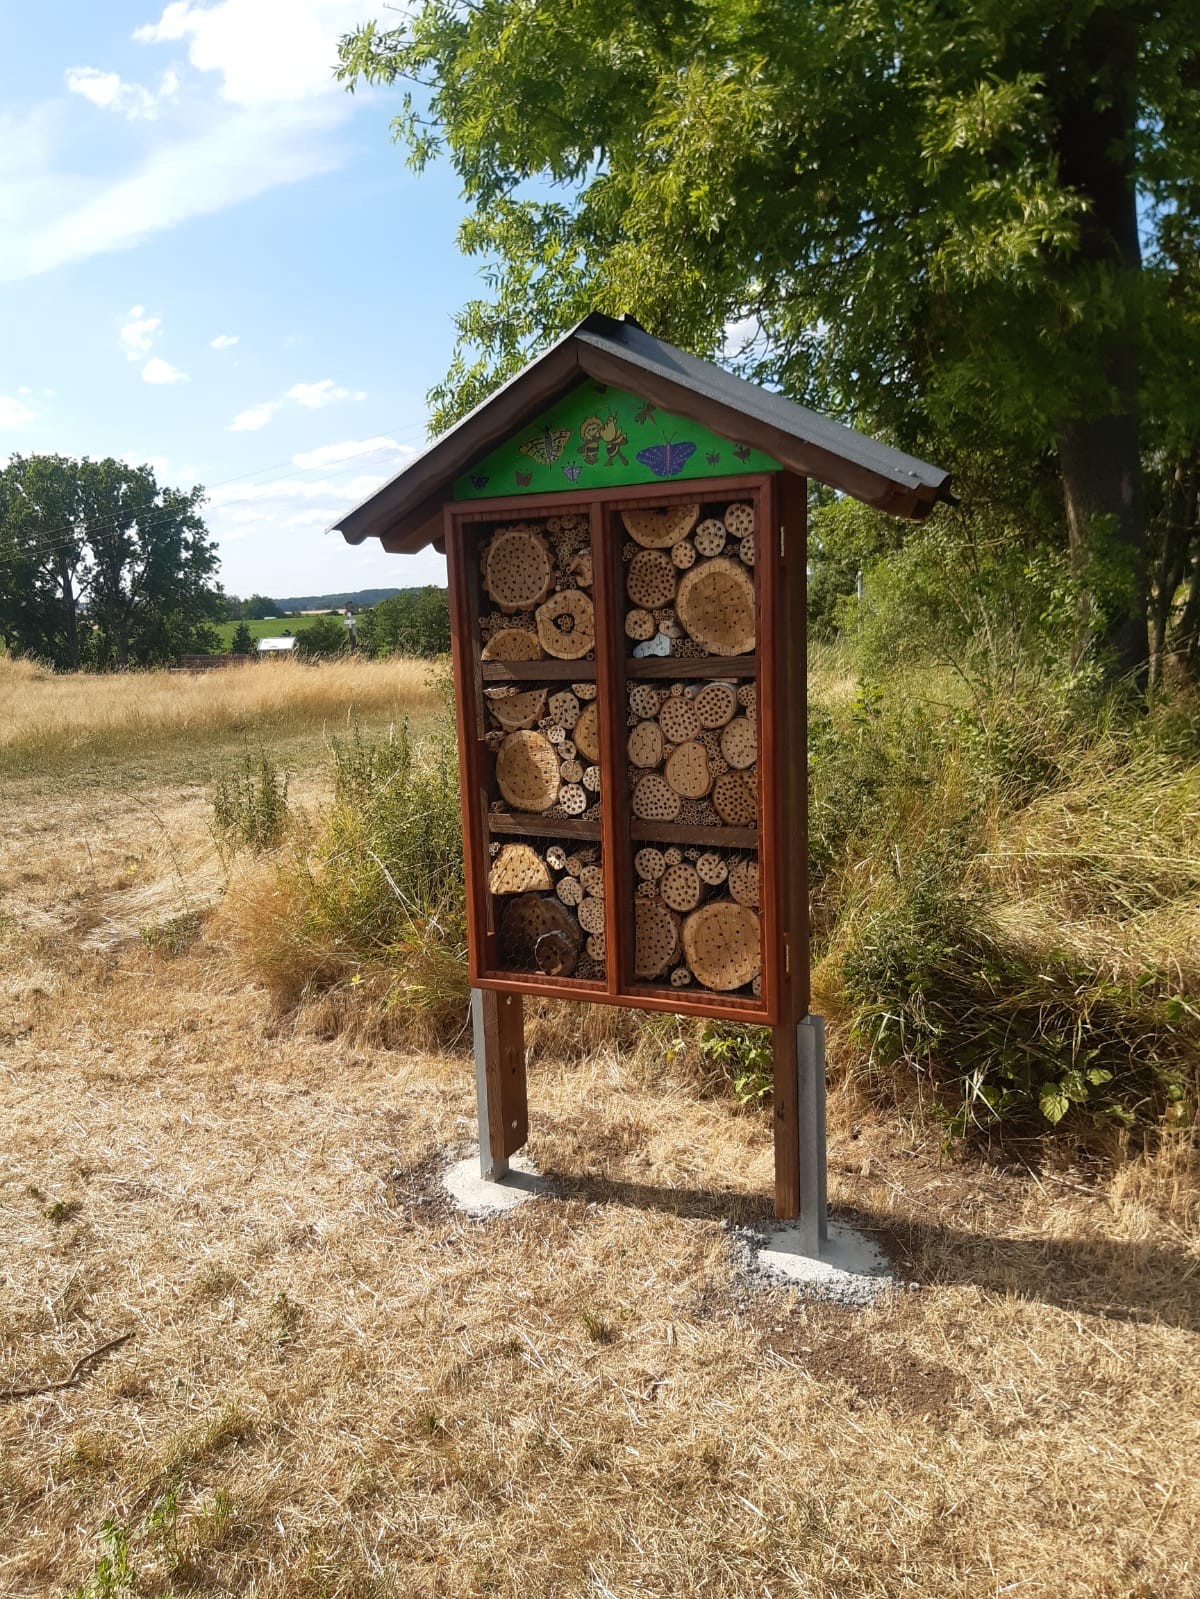 Unser Insektenhotel: Neuer Standort nach Generalüberholung